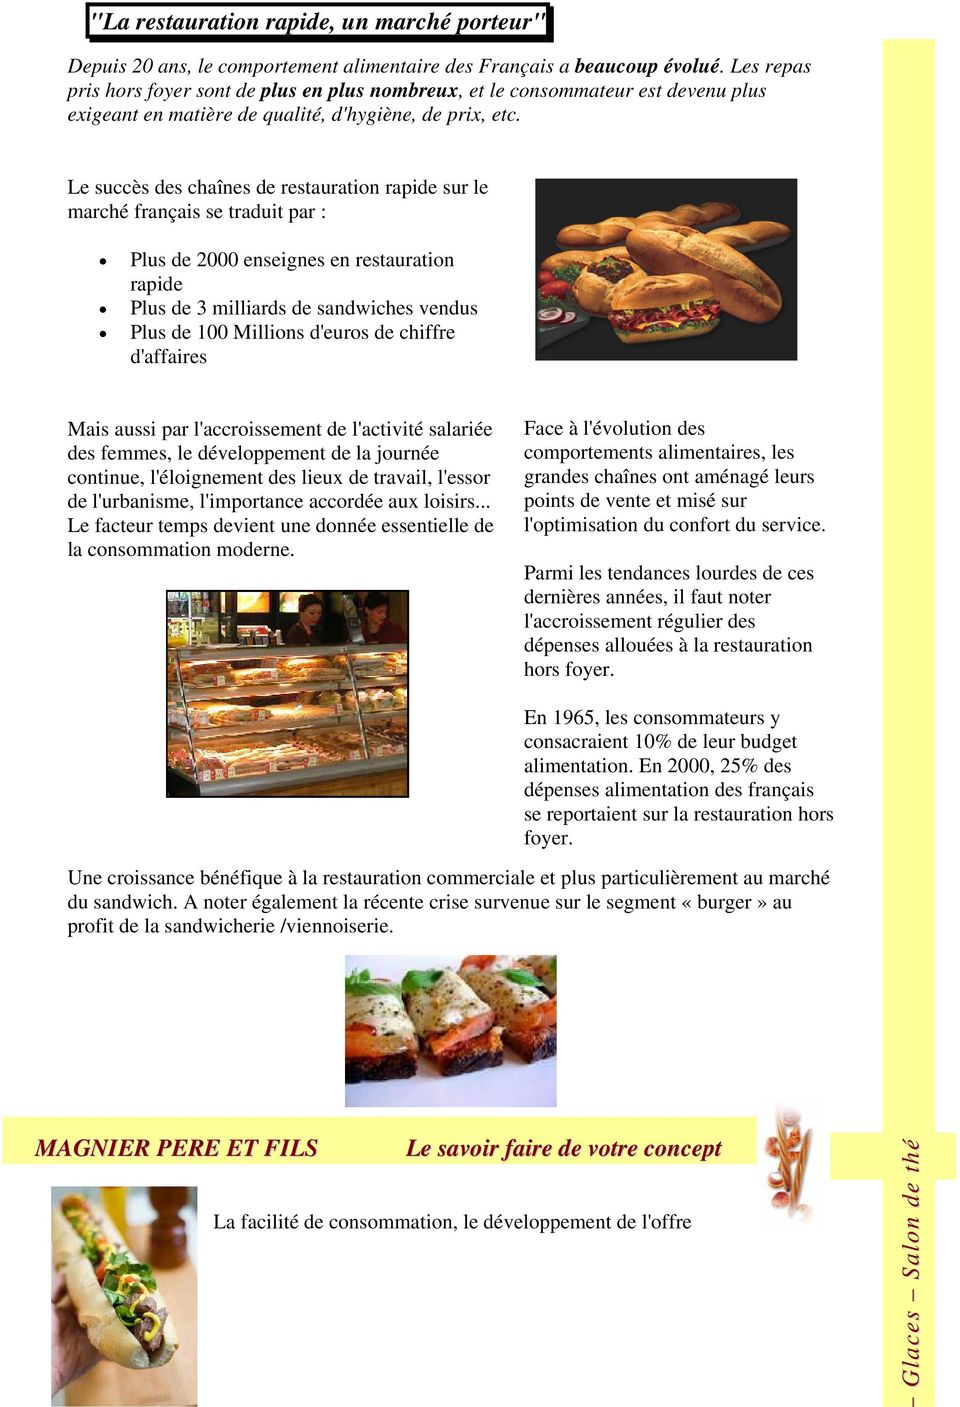 Le succès des chaînes de restauration rapide sur le marché français se traduit par : Plus de 2000 enseignes en restauration rapide Plus de 3 milliards de sandwiches vendus Plus de 100 Millions